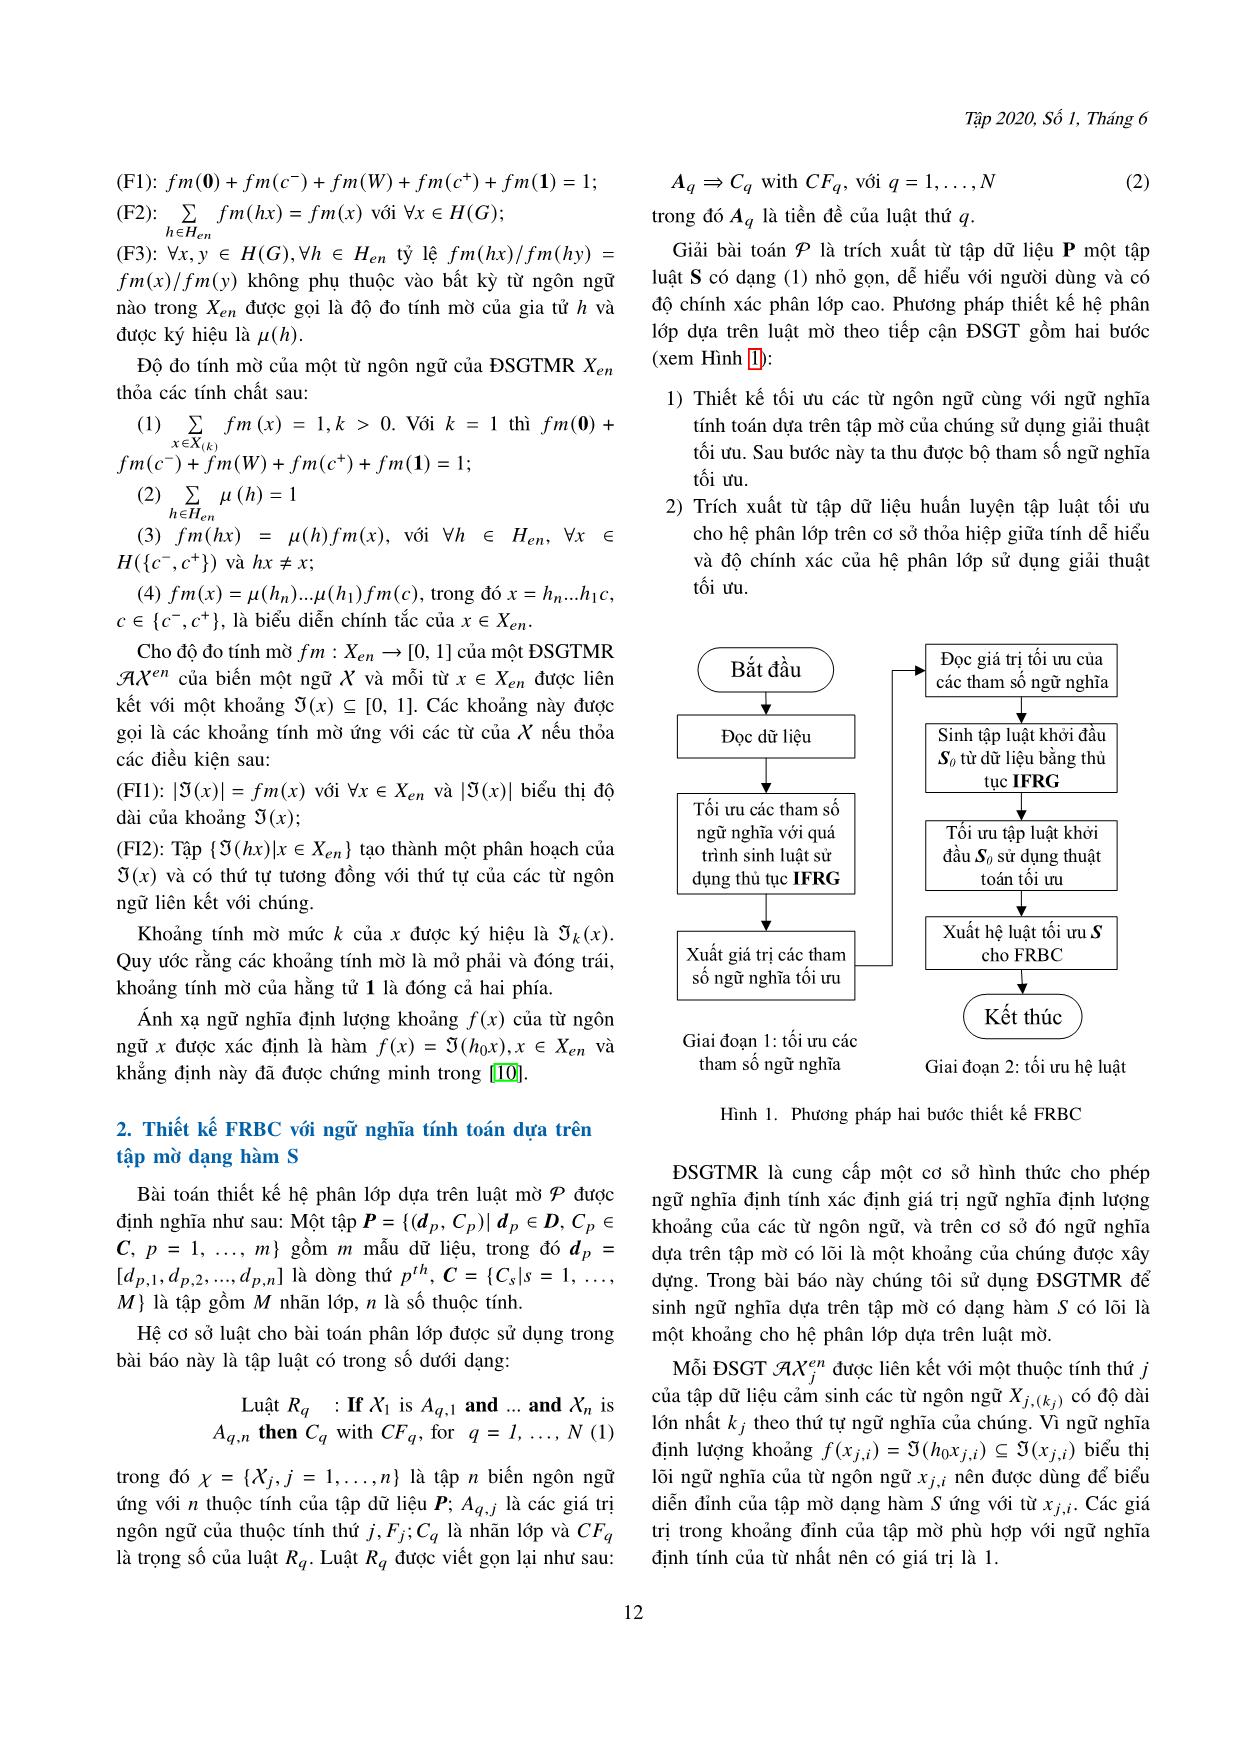 Một phương pháp thiết kế ngữ nghĩa tính toán của các từ ngôn ngữ giải bài toán phân lớp dựa trên luật mờ trang 3